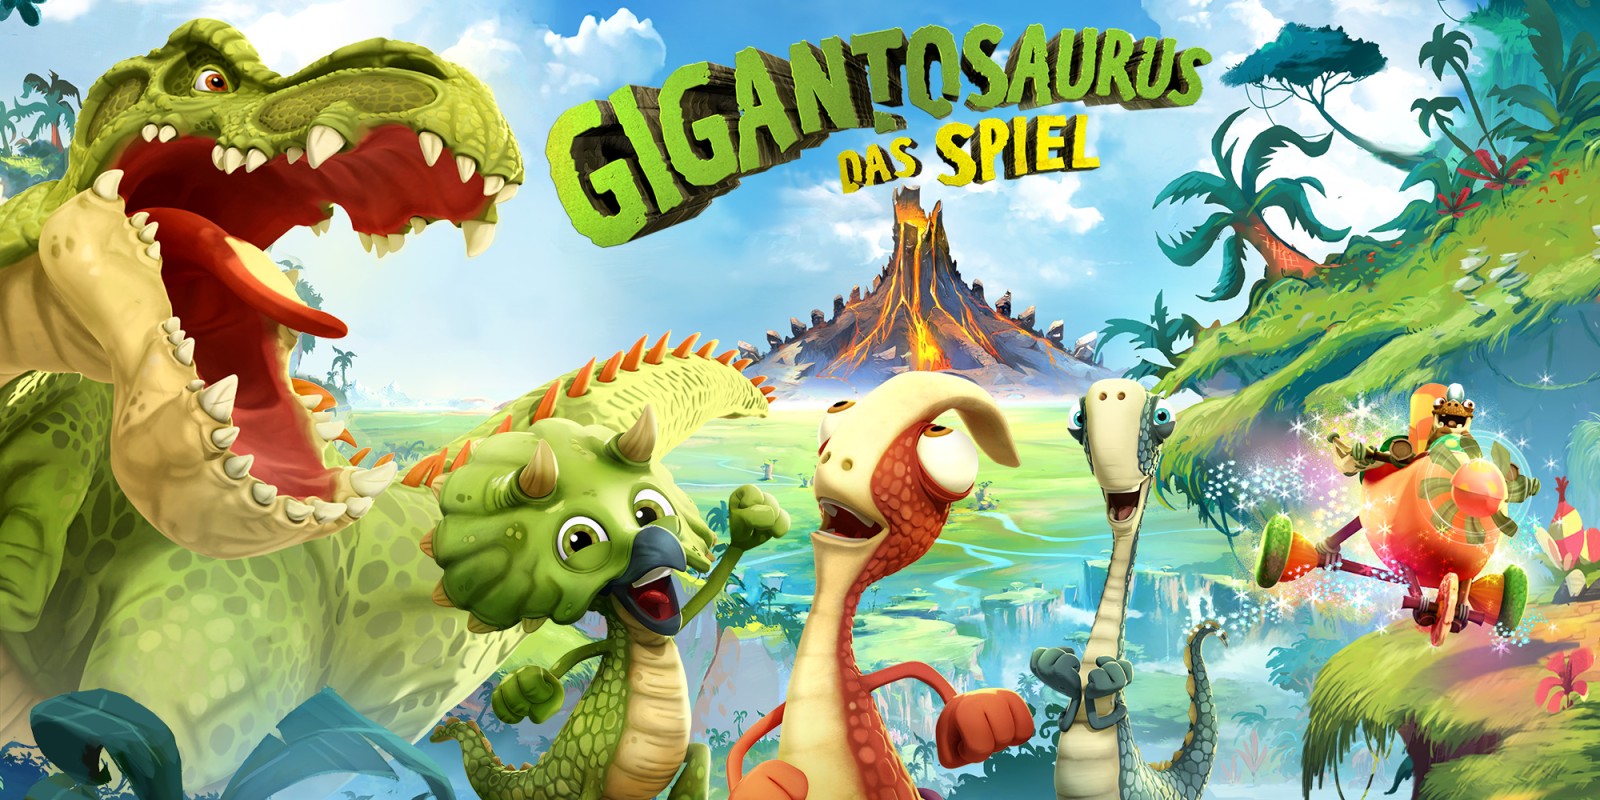 Gigantosaurus Das Spiel